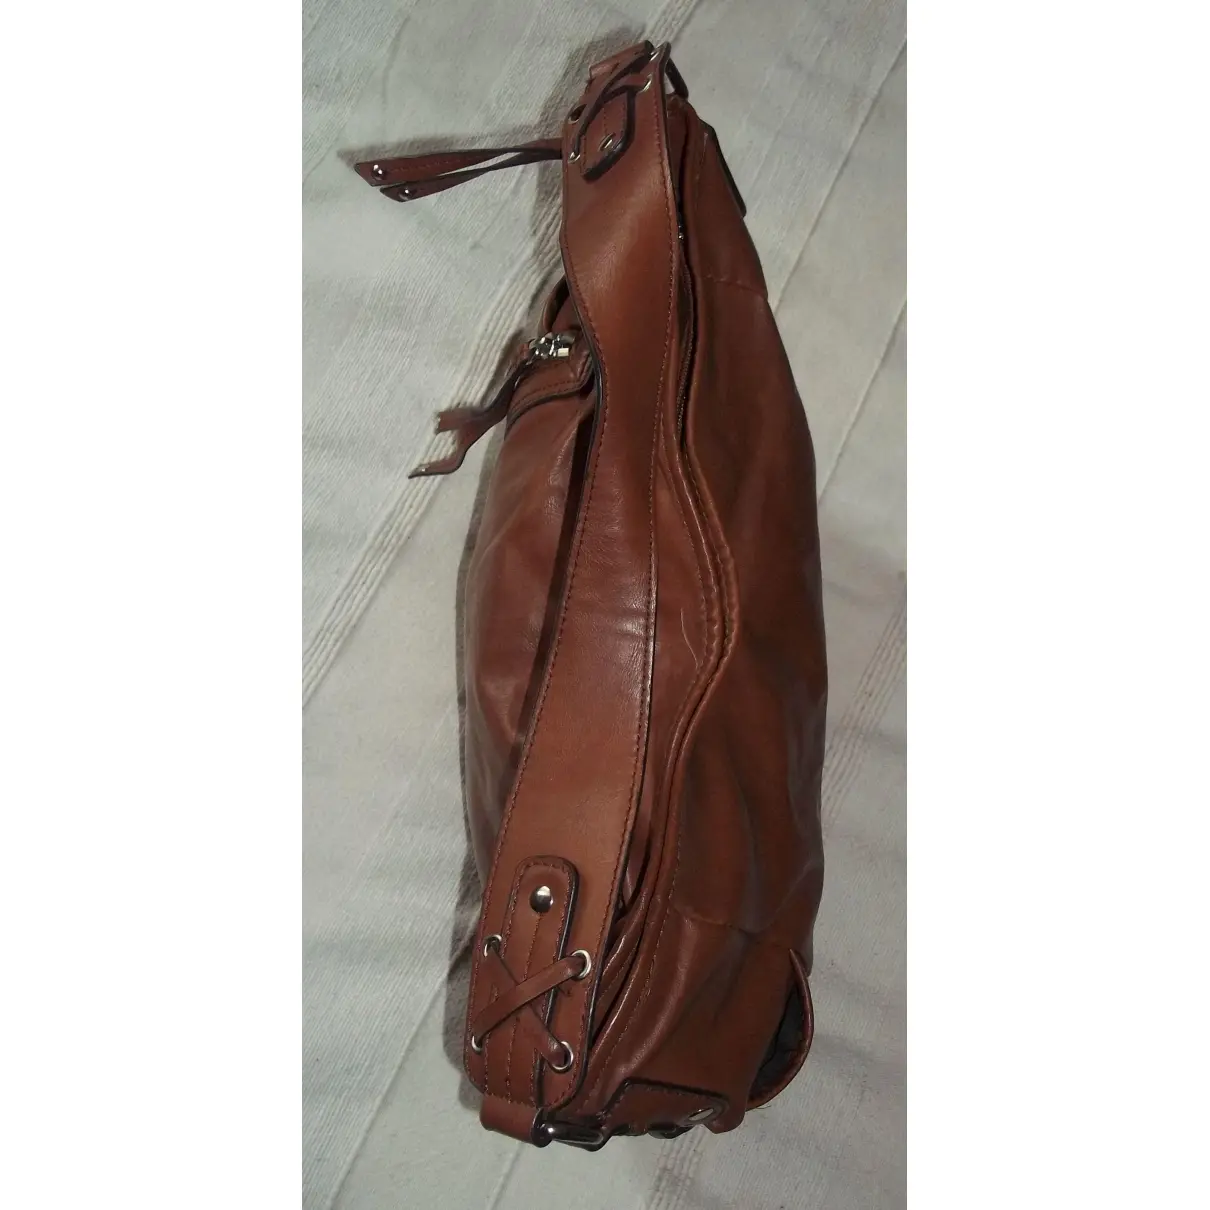 Buy Nine West Leather handbag online